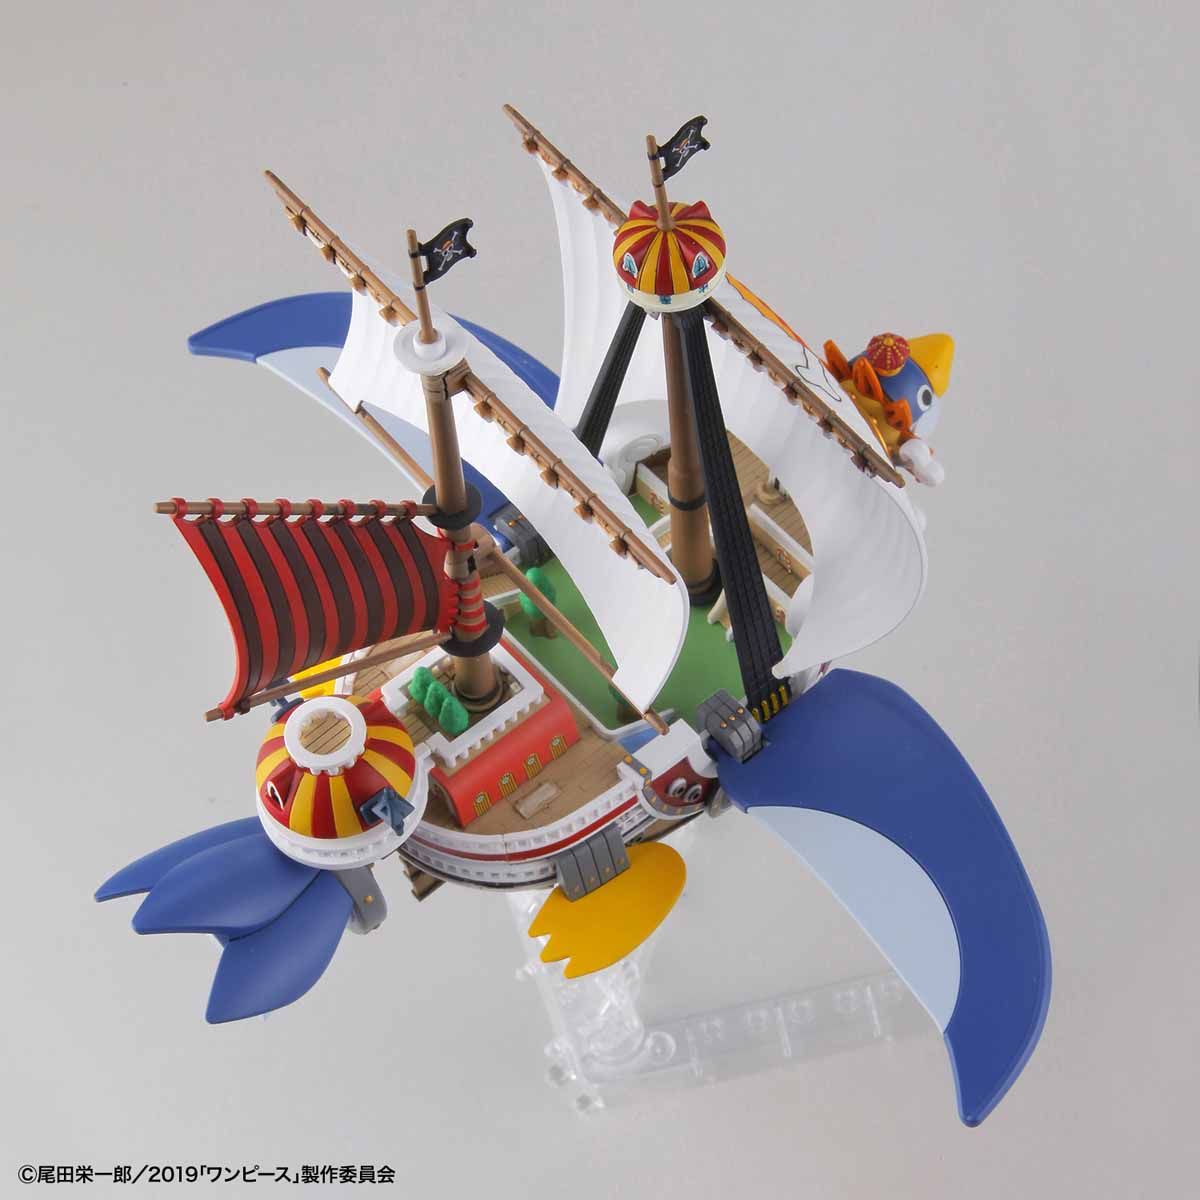 ワンピース偉大なる船(グランドシップ)コレクション サウザンド・サニー号 フライングモデル 03